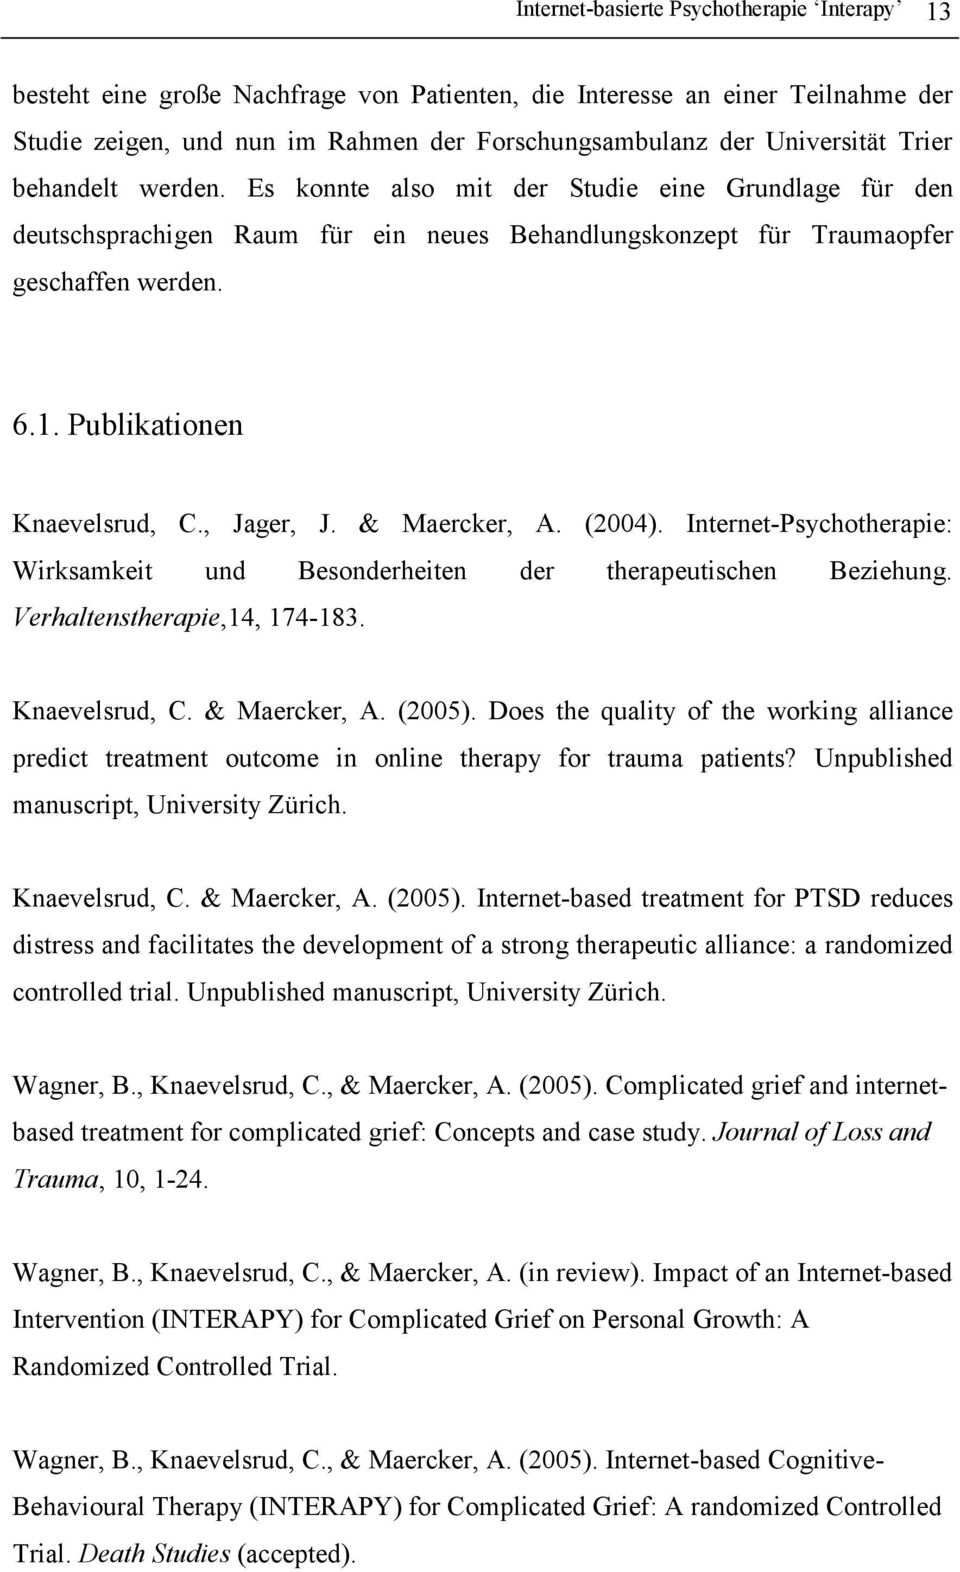 Publikationen Knaevelsrud, C., Jager, J. & Maercker, A. (2004). Internet-Psychotherapie: Wirksamkeit und Besonderheiten der therapeutischen Beziehung. Verhaltenstherapie,14, 174-183. Knaevelsrud, C. & Maercker, A. (2005).